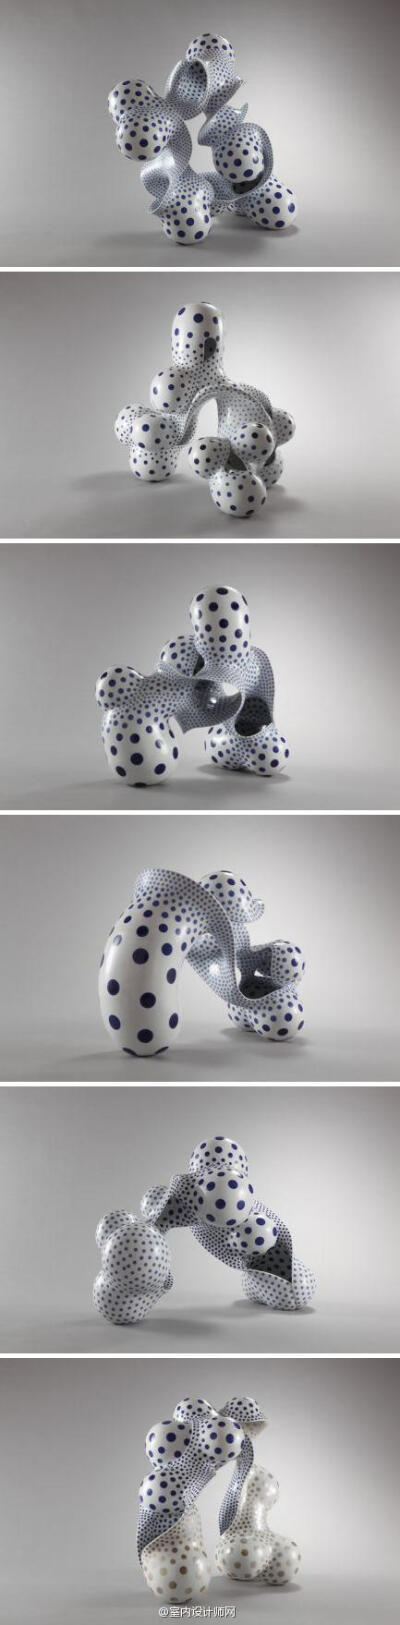 评论  handy maiden出品的超萌动物手工陶艺造型品,由美国加州设计师 